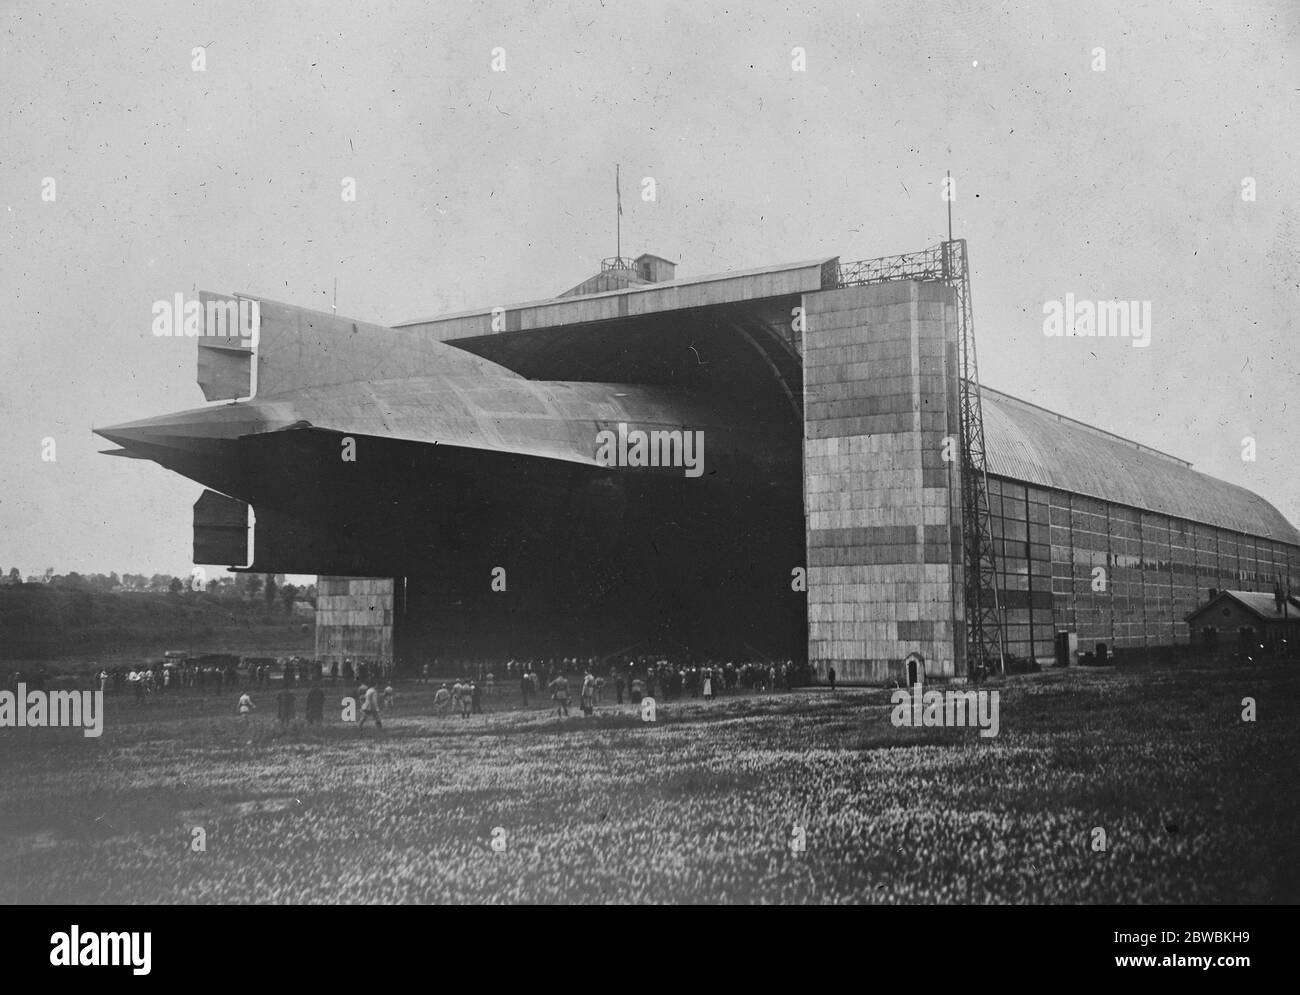 La Germania consegna uno zeppelin alla Francia la L 72 entrando nel suo hangar 14 luglio 1920 Foto Stock